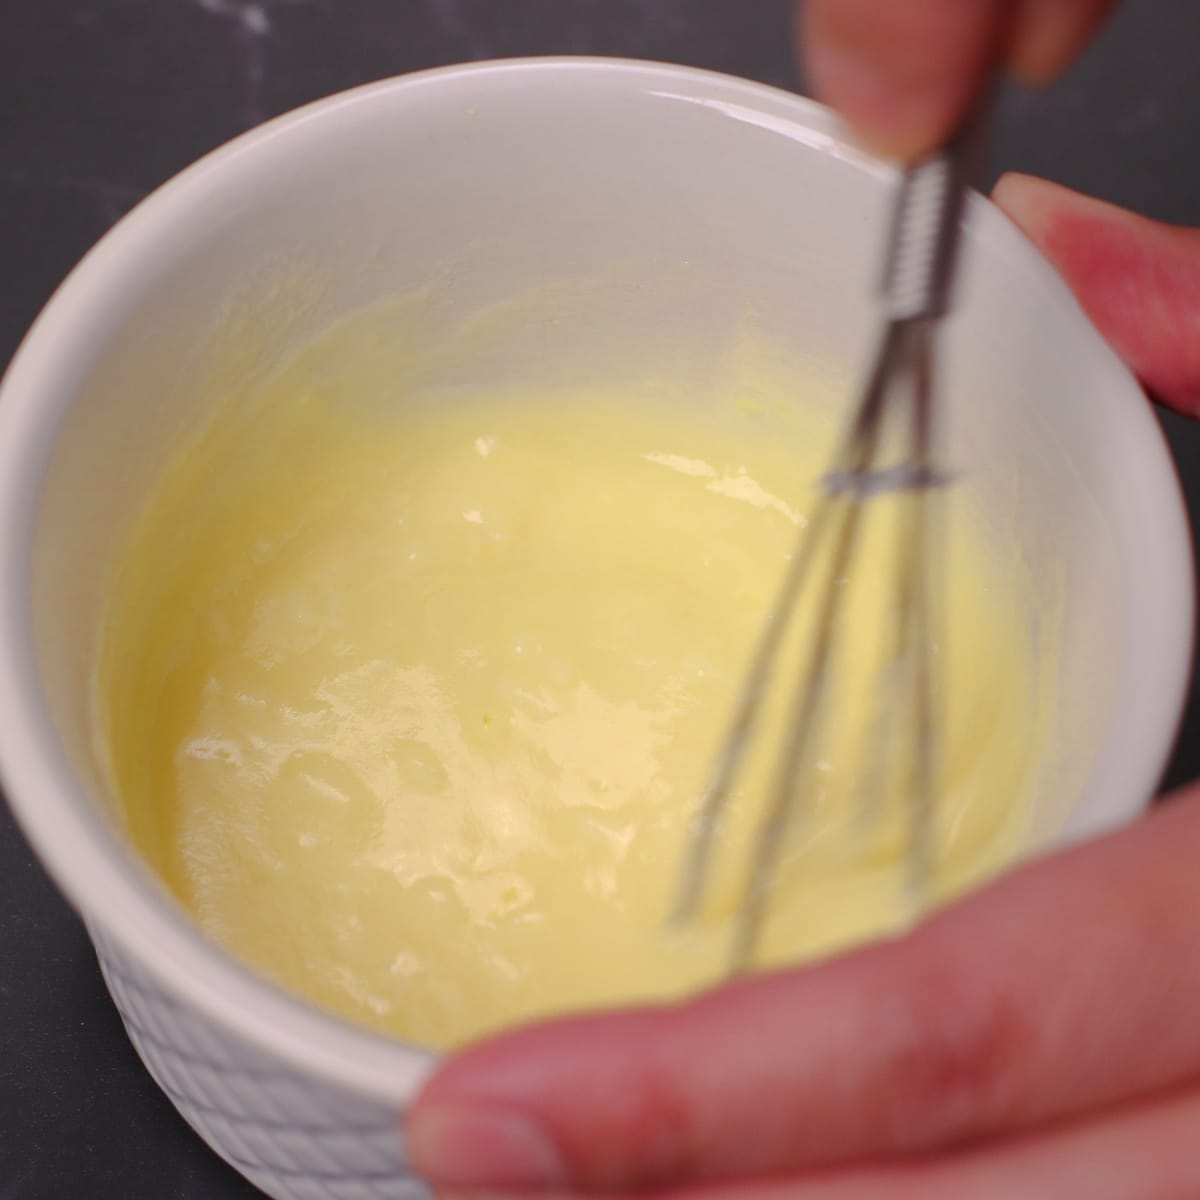 Mixing lemon garlic butter sauce in a ramekin bowl.